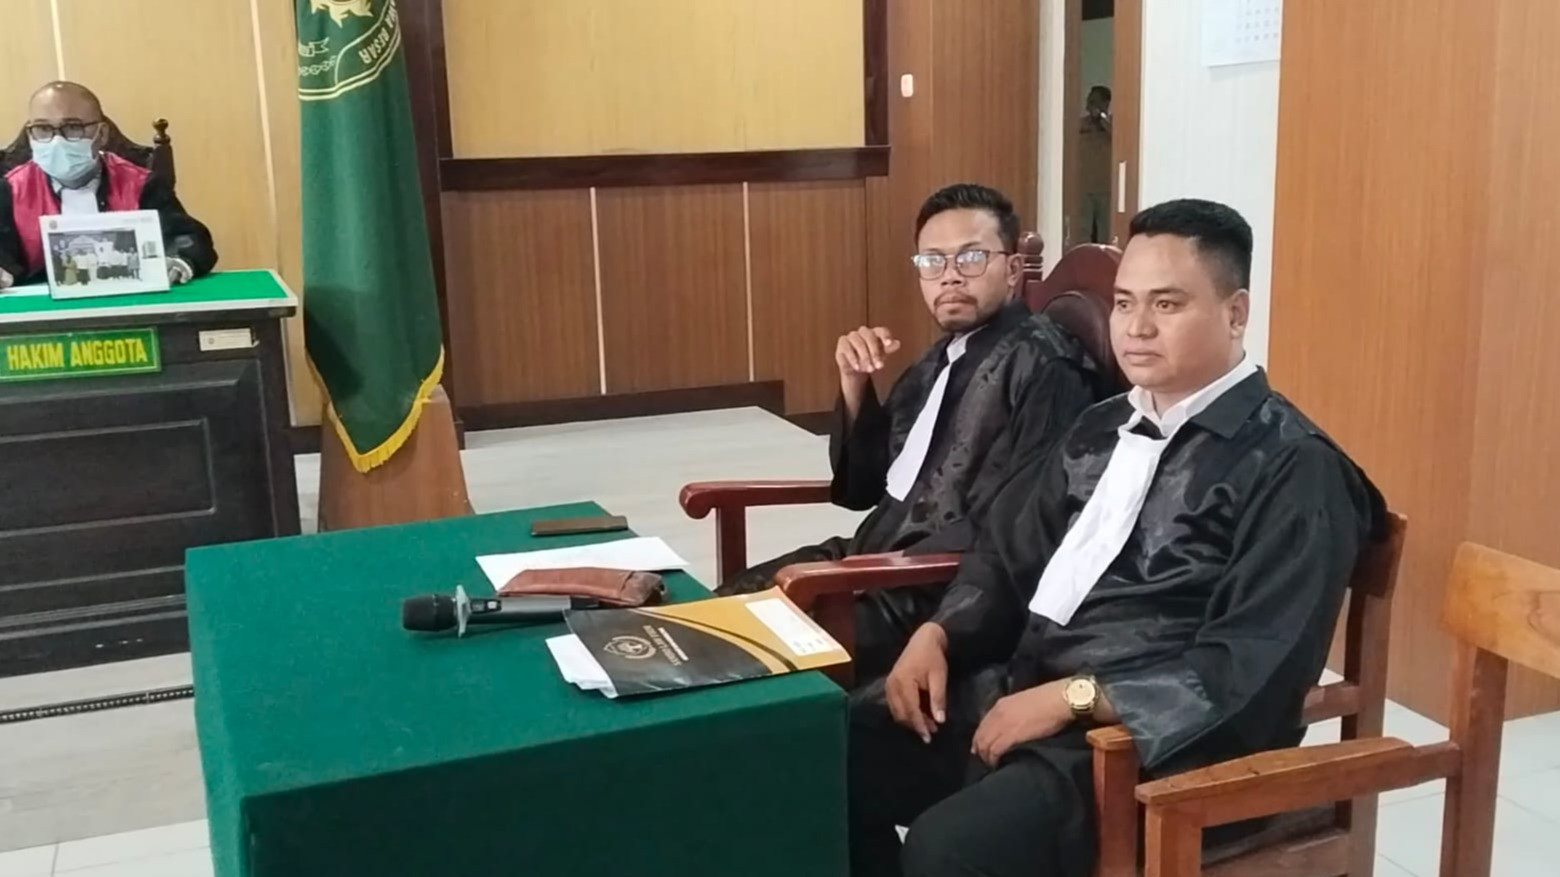 Suasana persidangan kasus Sumber elektronik di Pengadilan Negeri Sumbawa.